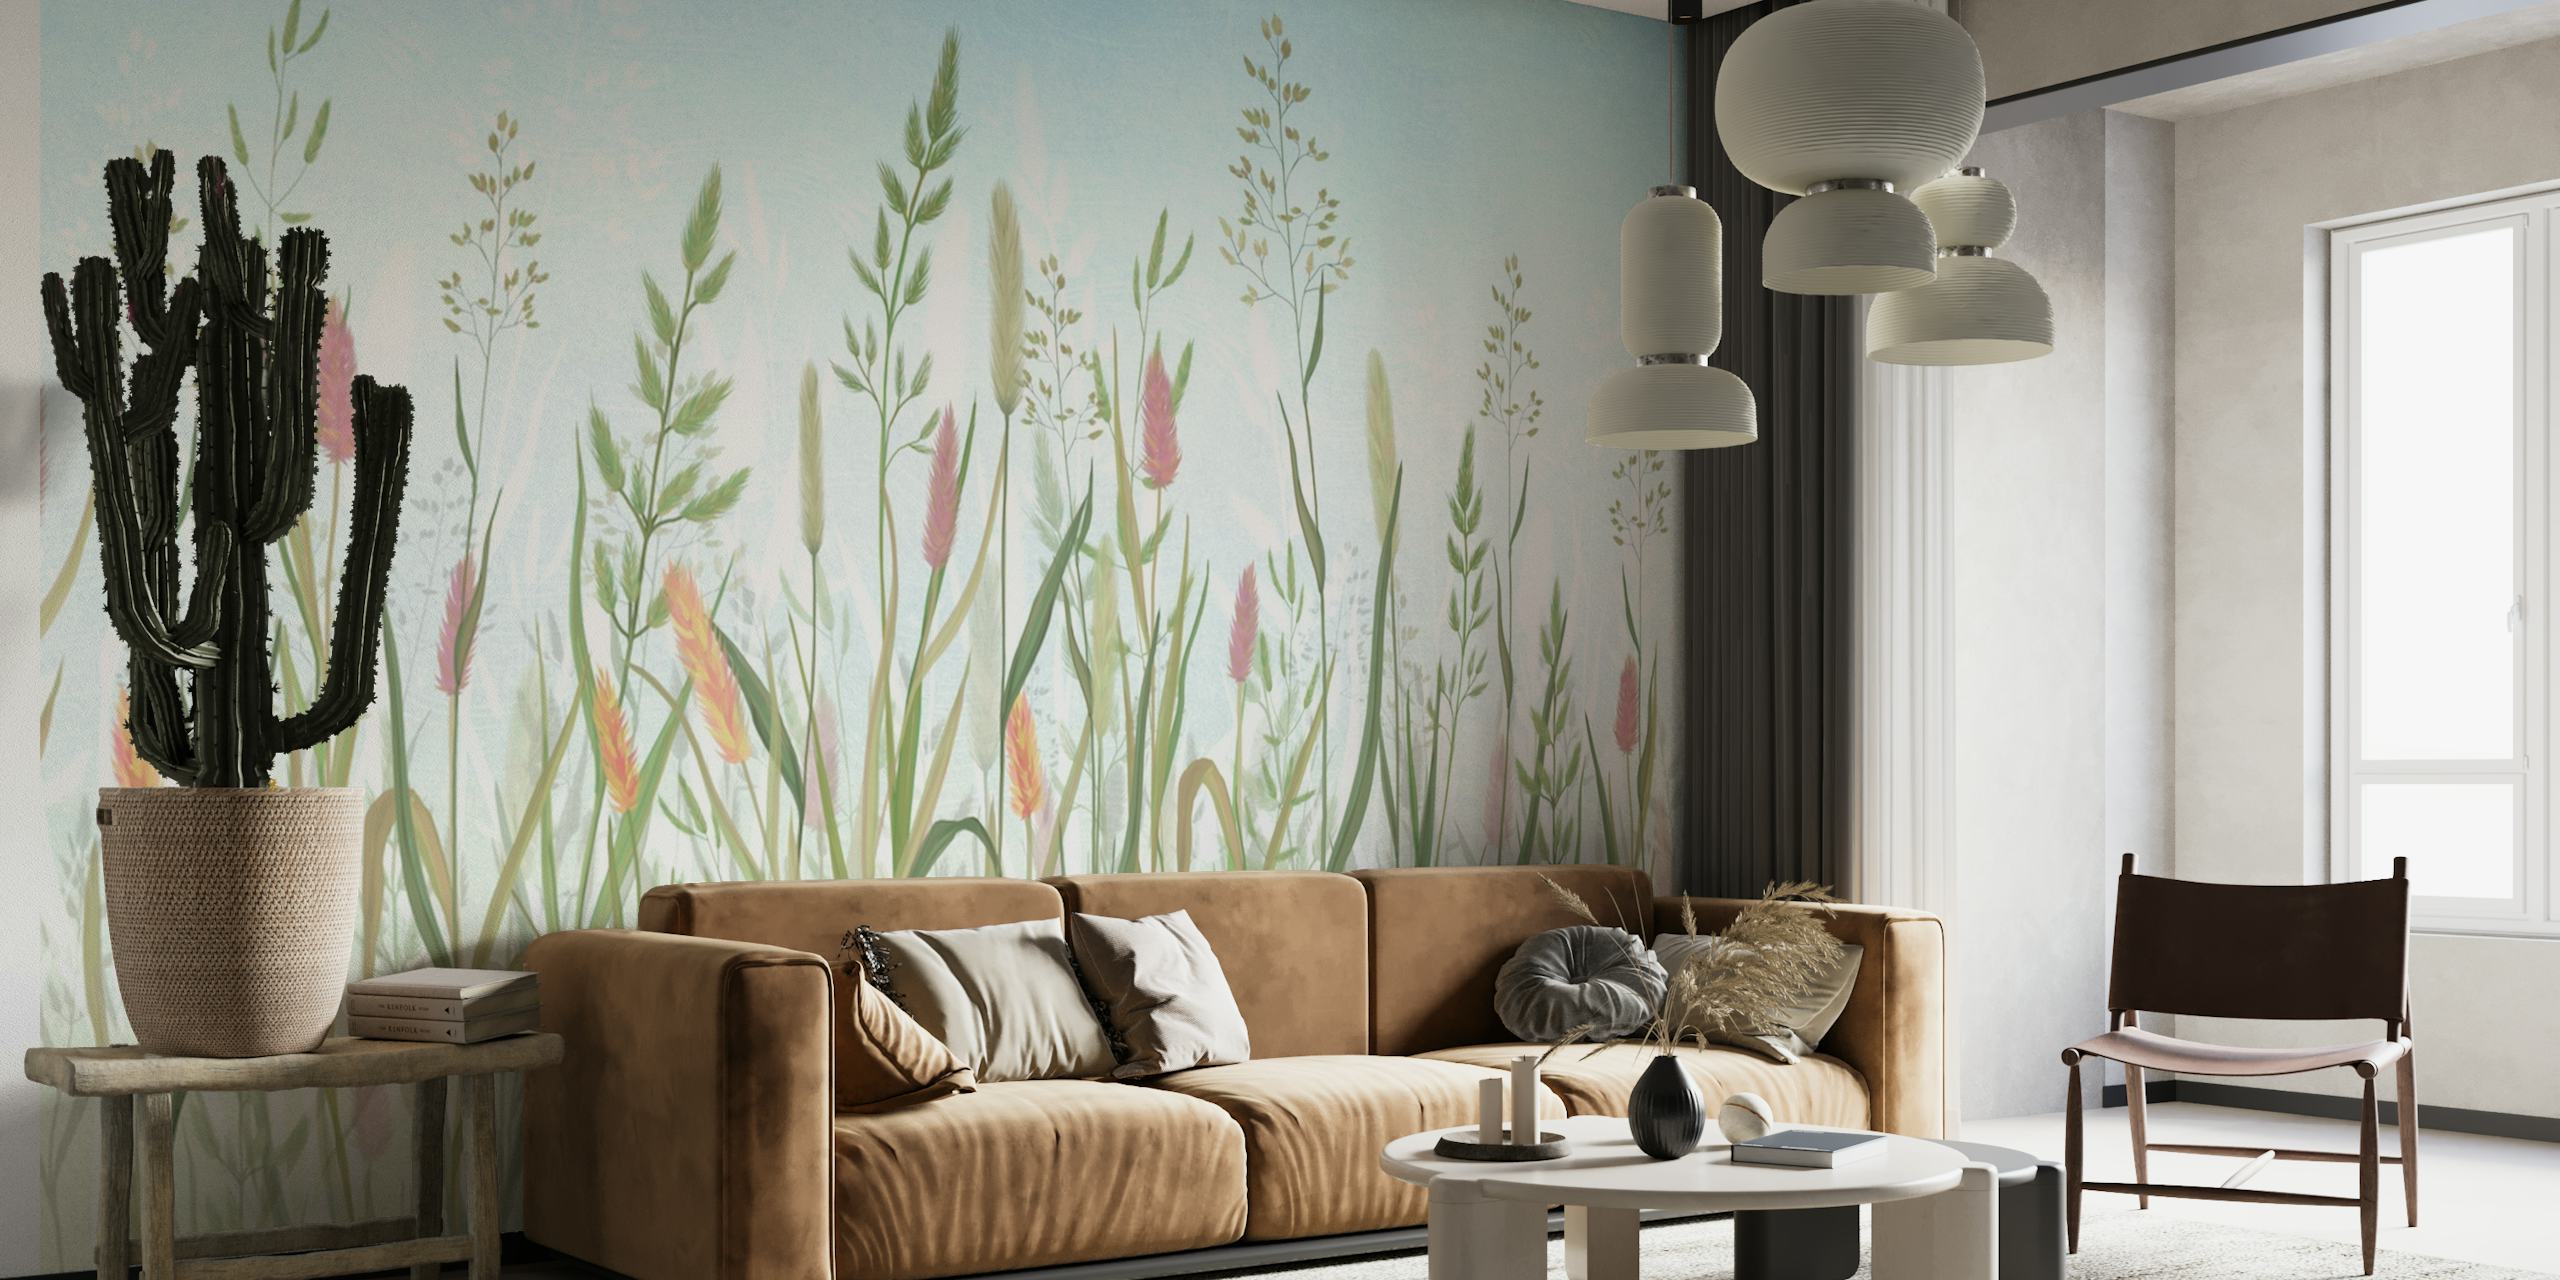 Meadow grass wallpaper